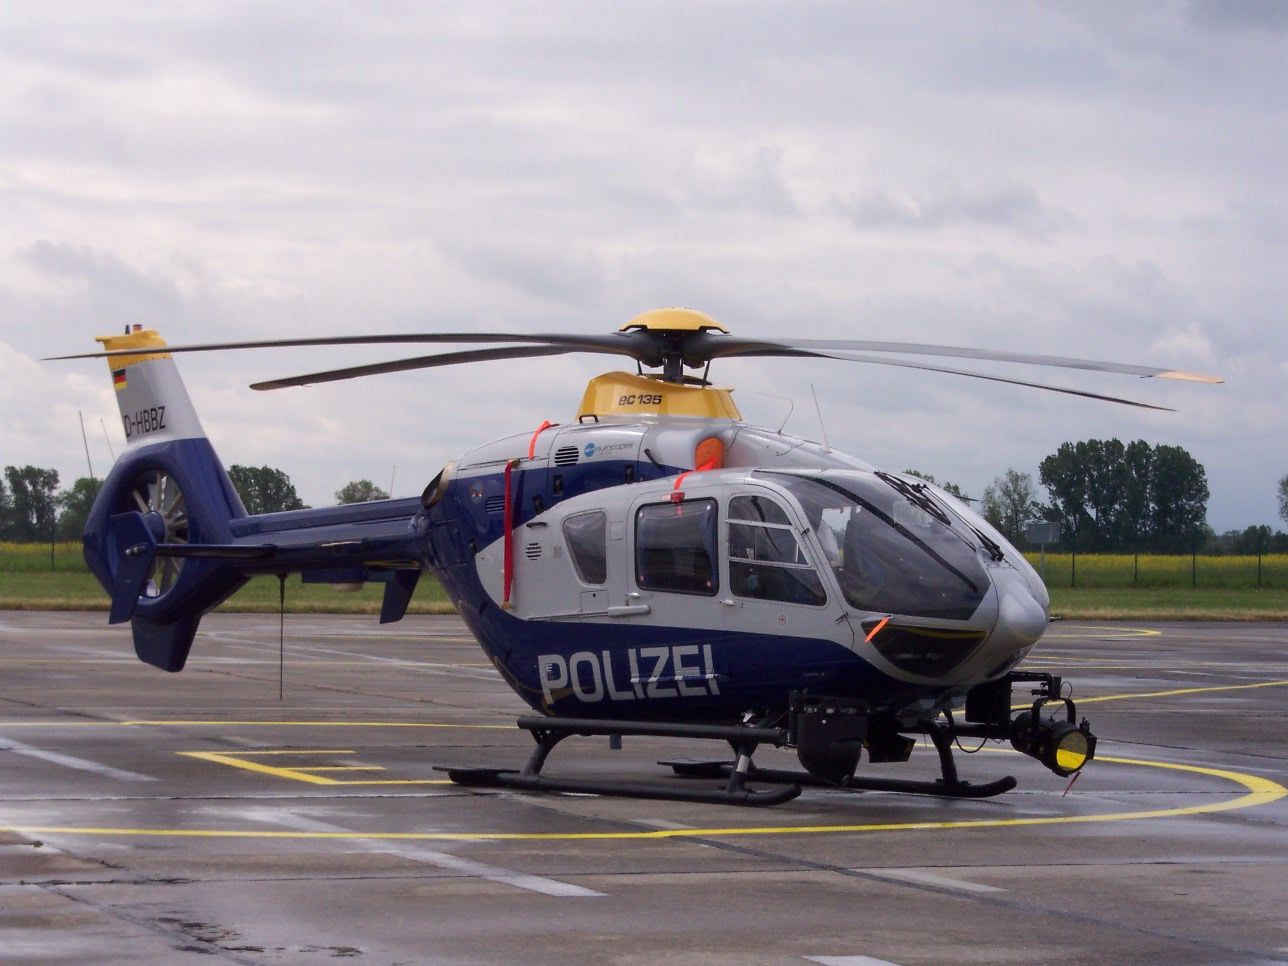 Eurocopter EC-135/635 previous